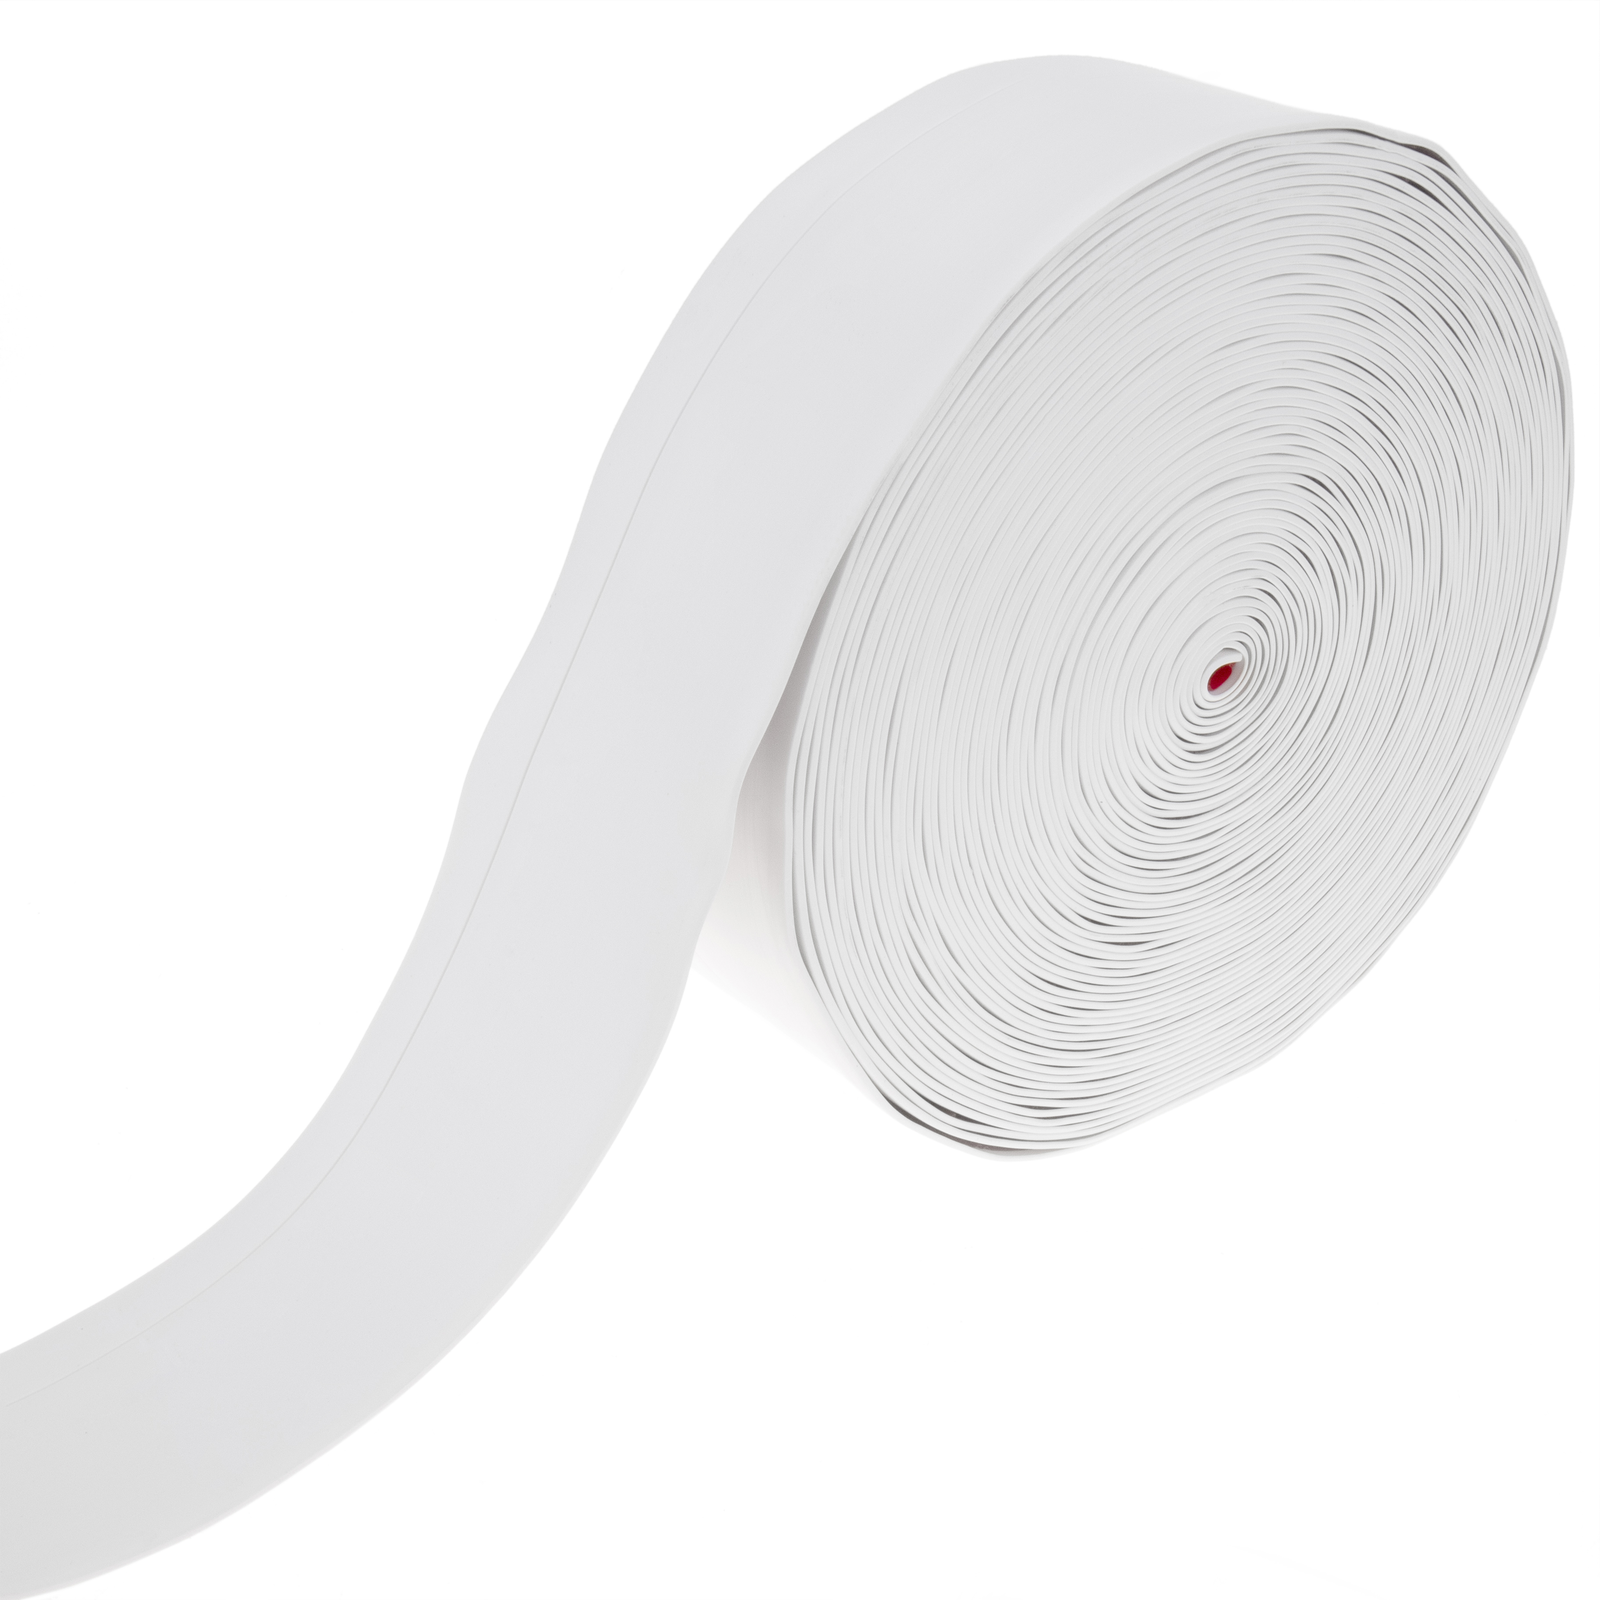 Plinthe flexible autocollante 70 x 20 mm. Longueur 10 m blanc